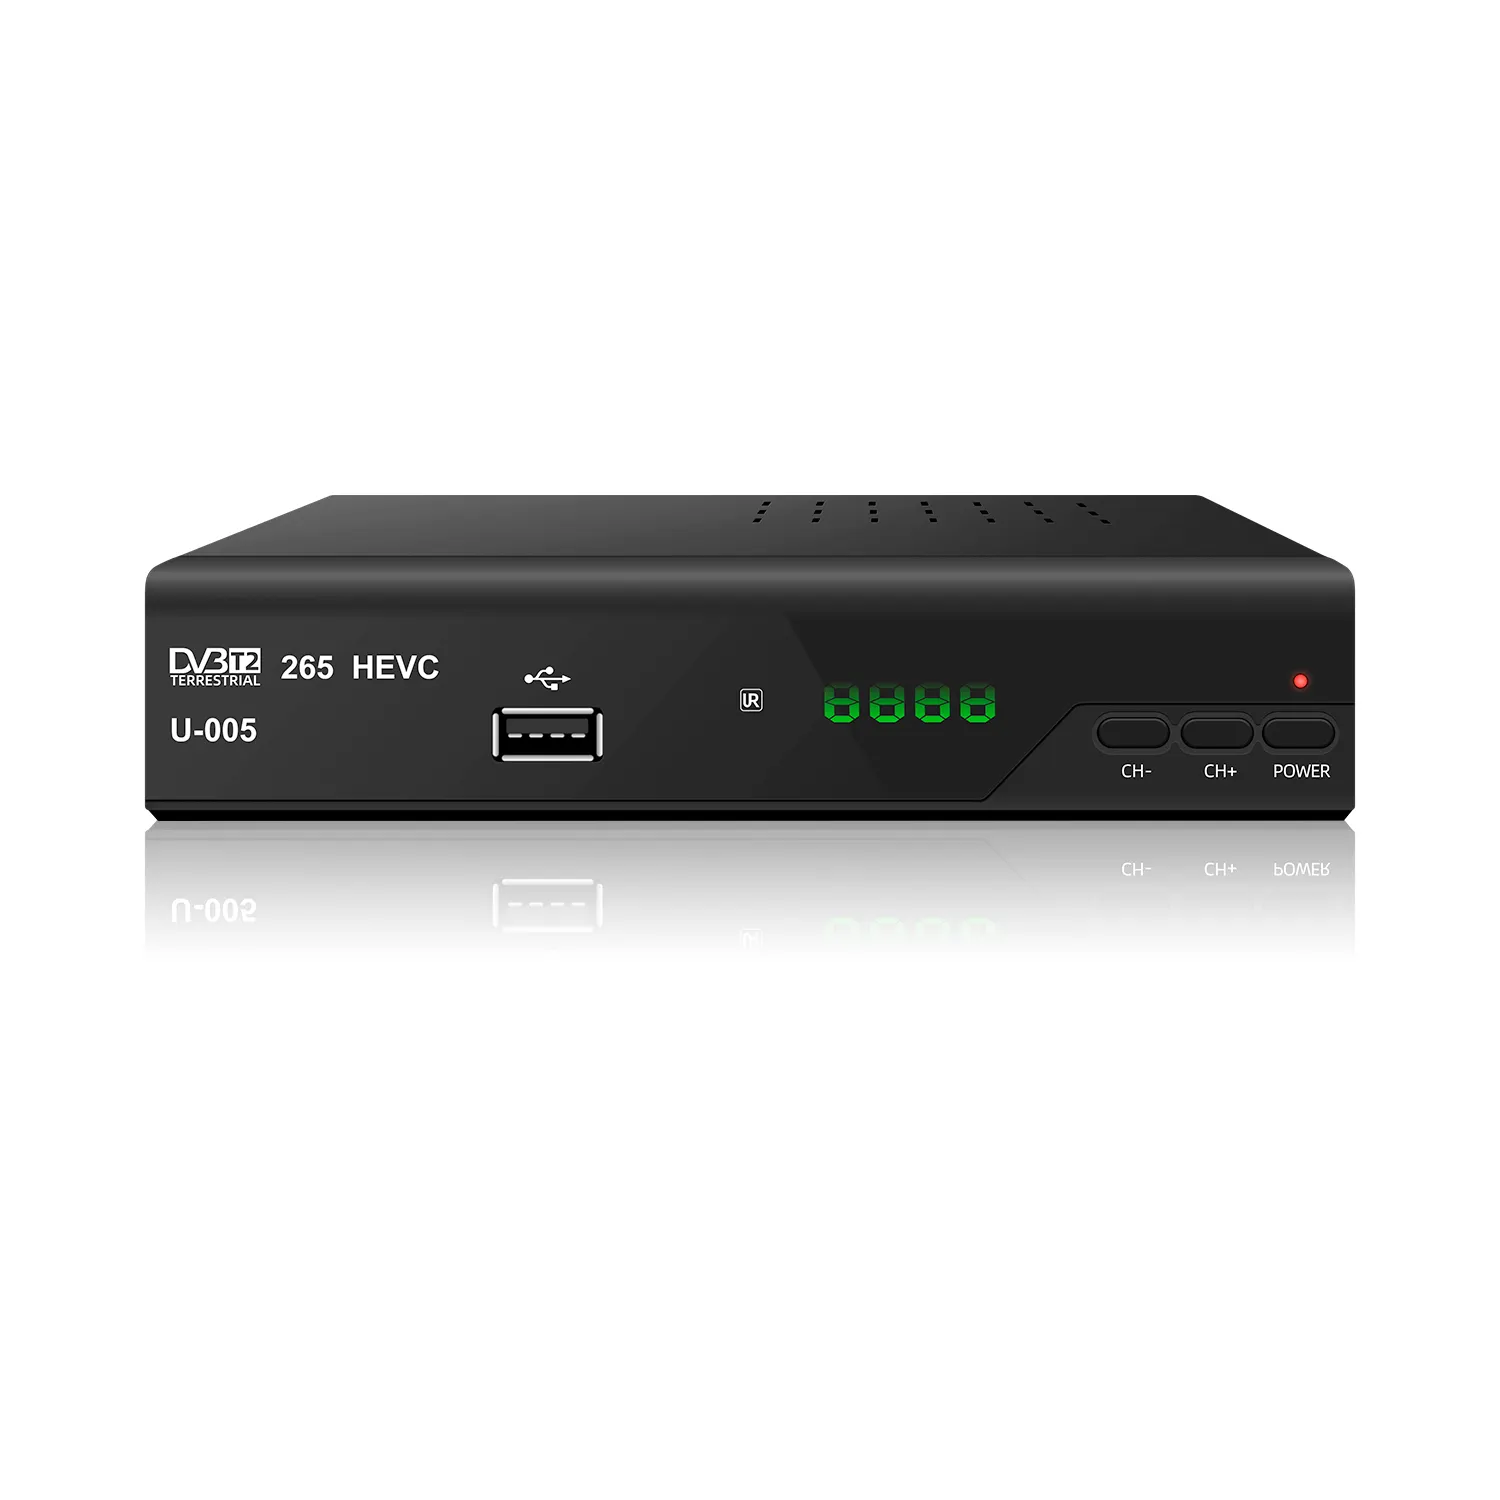 Fta hd 1080p DVB-T2 décodeur libre à l'air mini tv décodeur canal décalage temporel lecteur multimédia dvb-t2